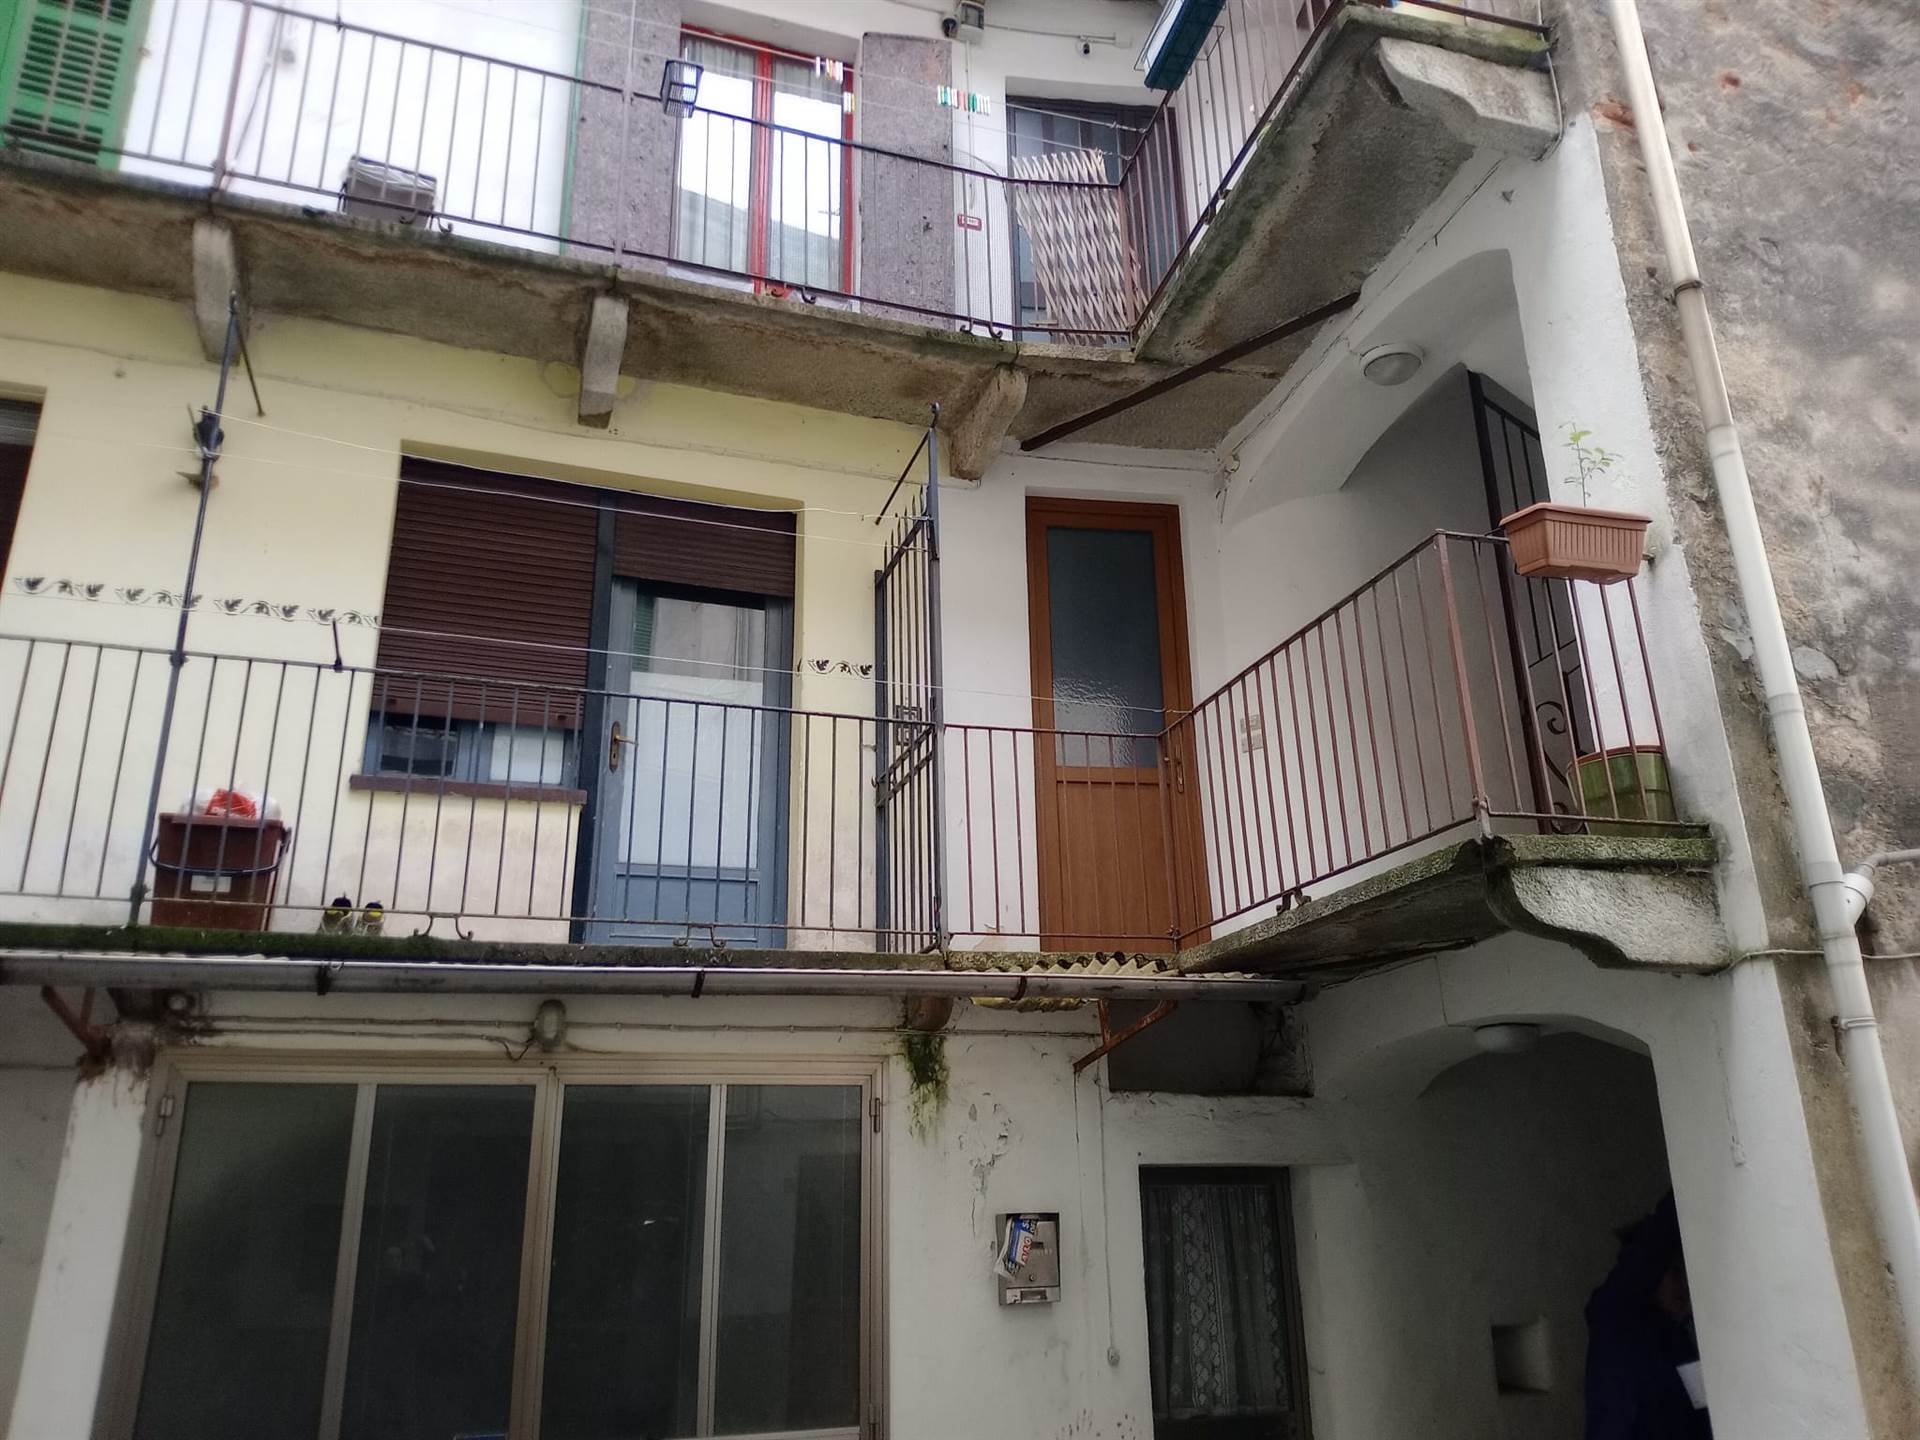 Appartamento in affitto a Sagliano Micca, 3 locali, prezzo € 280 | PortaleAgenzieImmobiliari.it